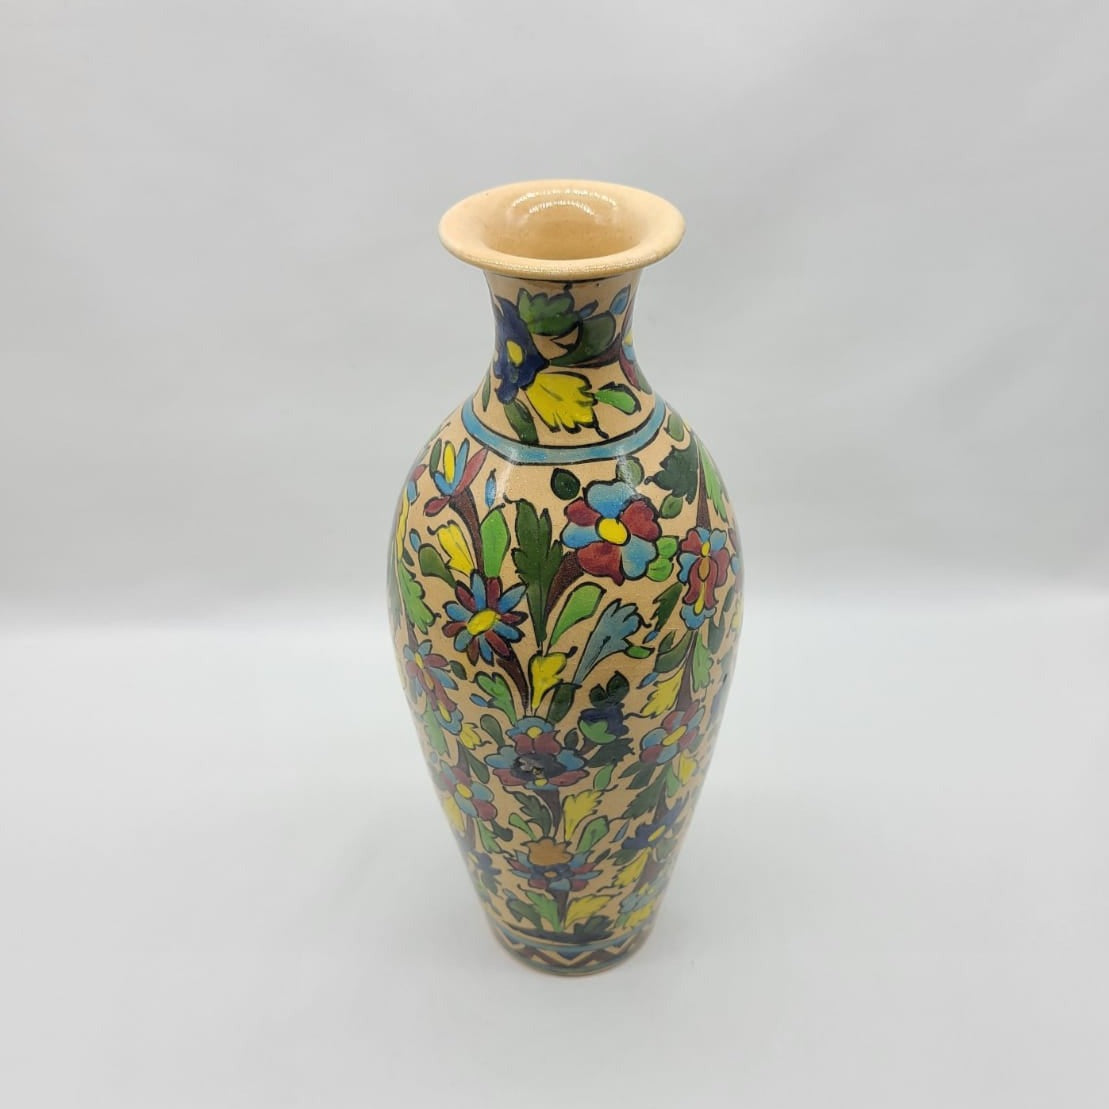 Ceramic Flower Bottle Neck Vase - HighTouch 